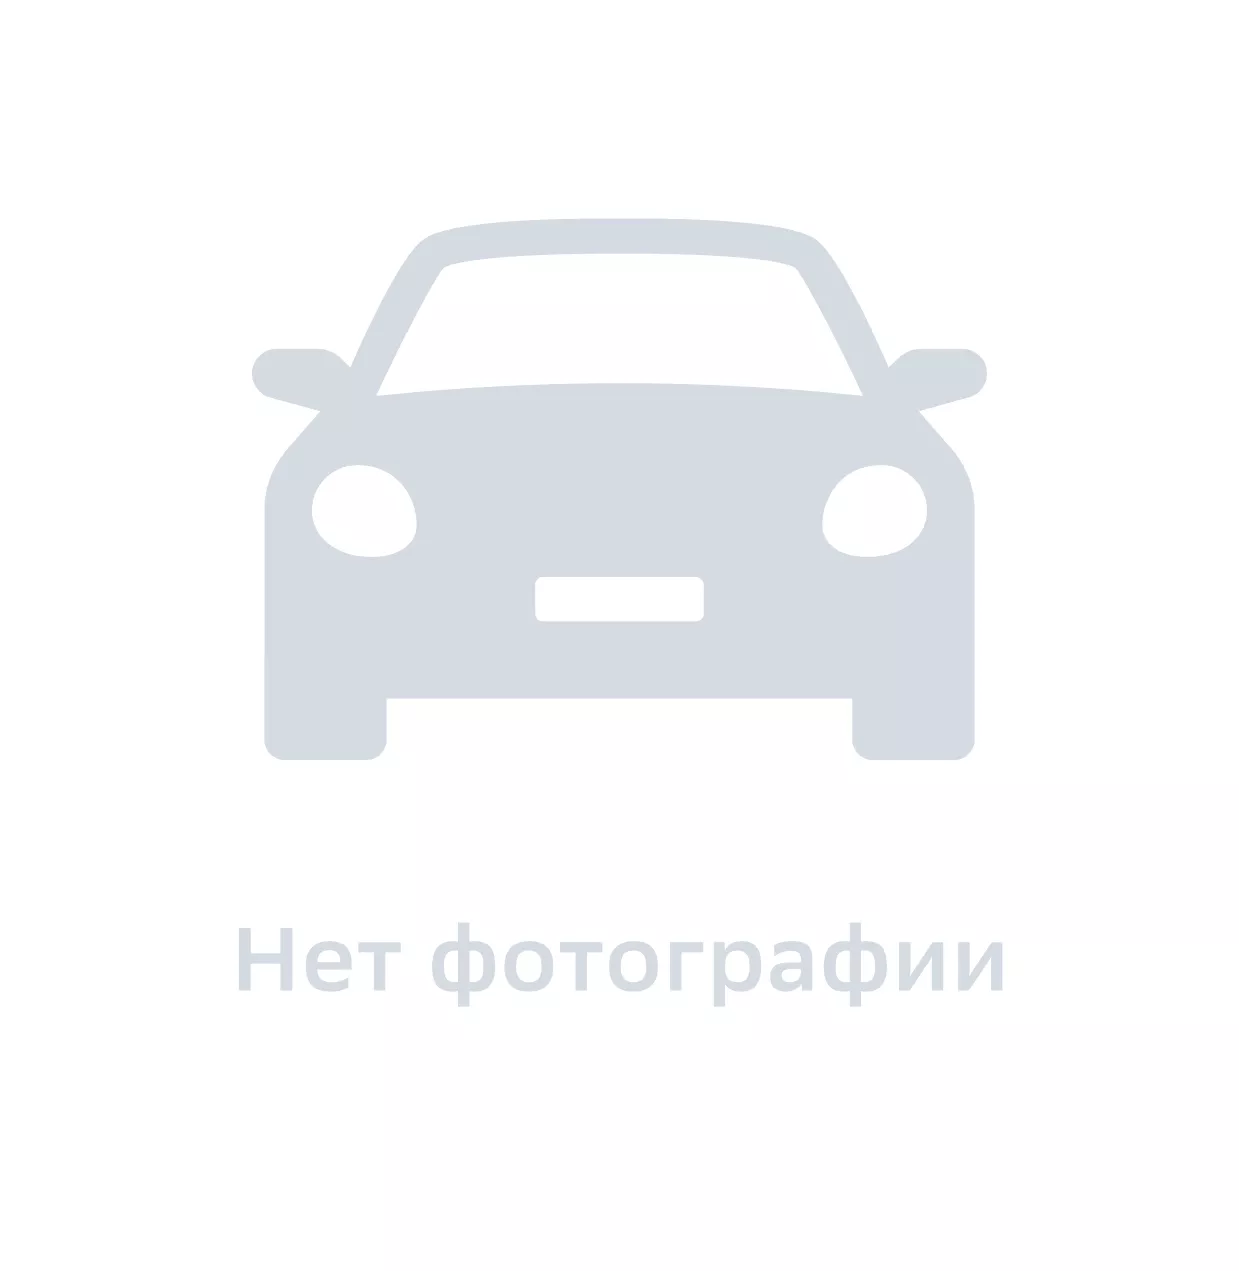 Держатель колпака литого диска, Hyundai-KIA, арт. 52960H1020, цена за 1 шт.